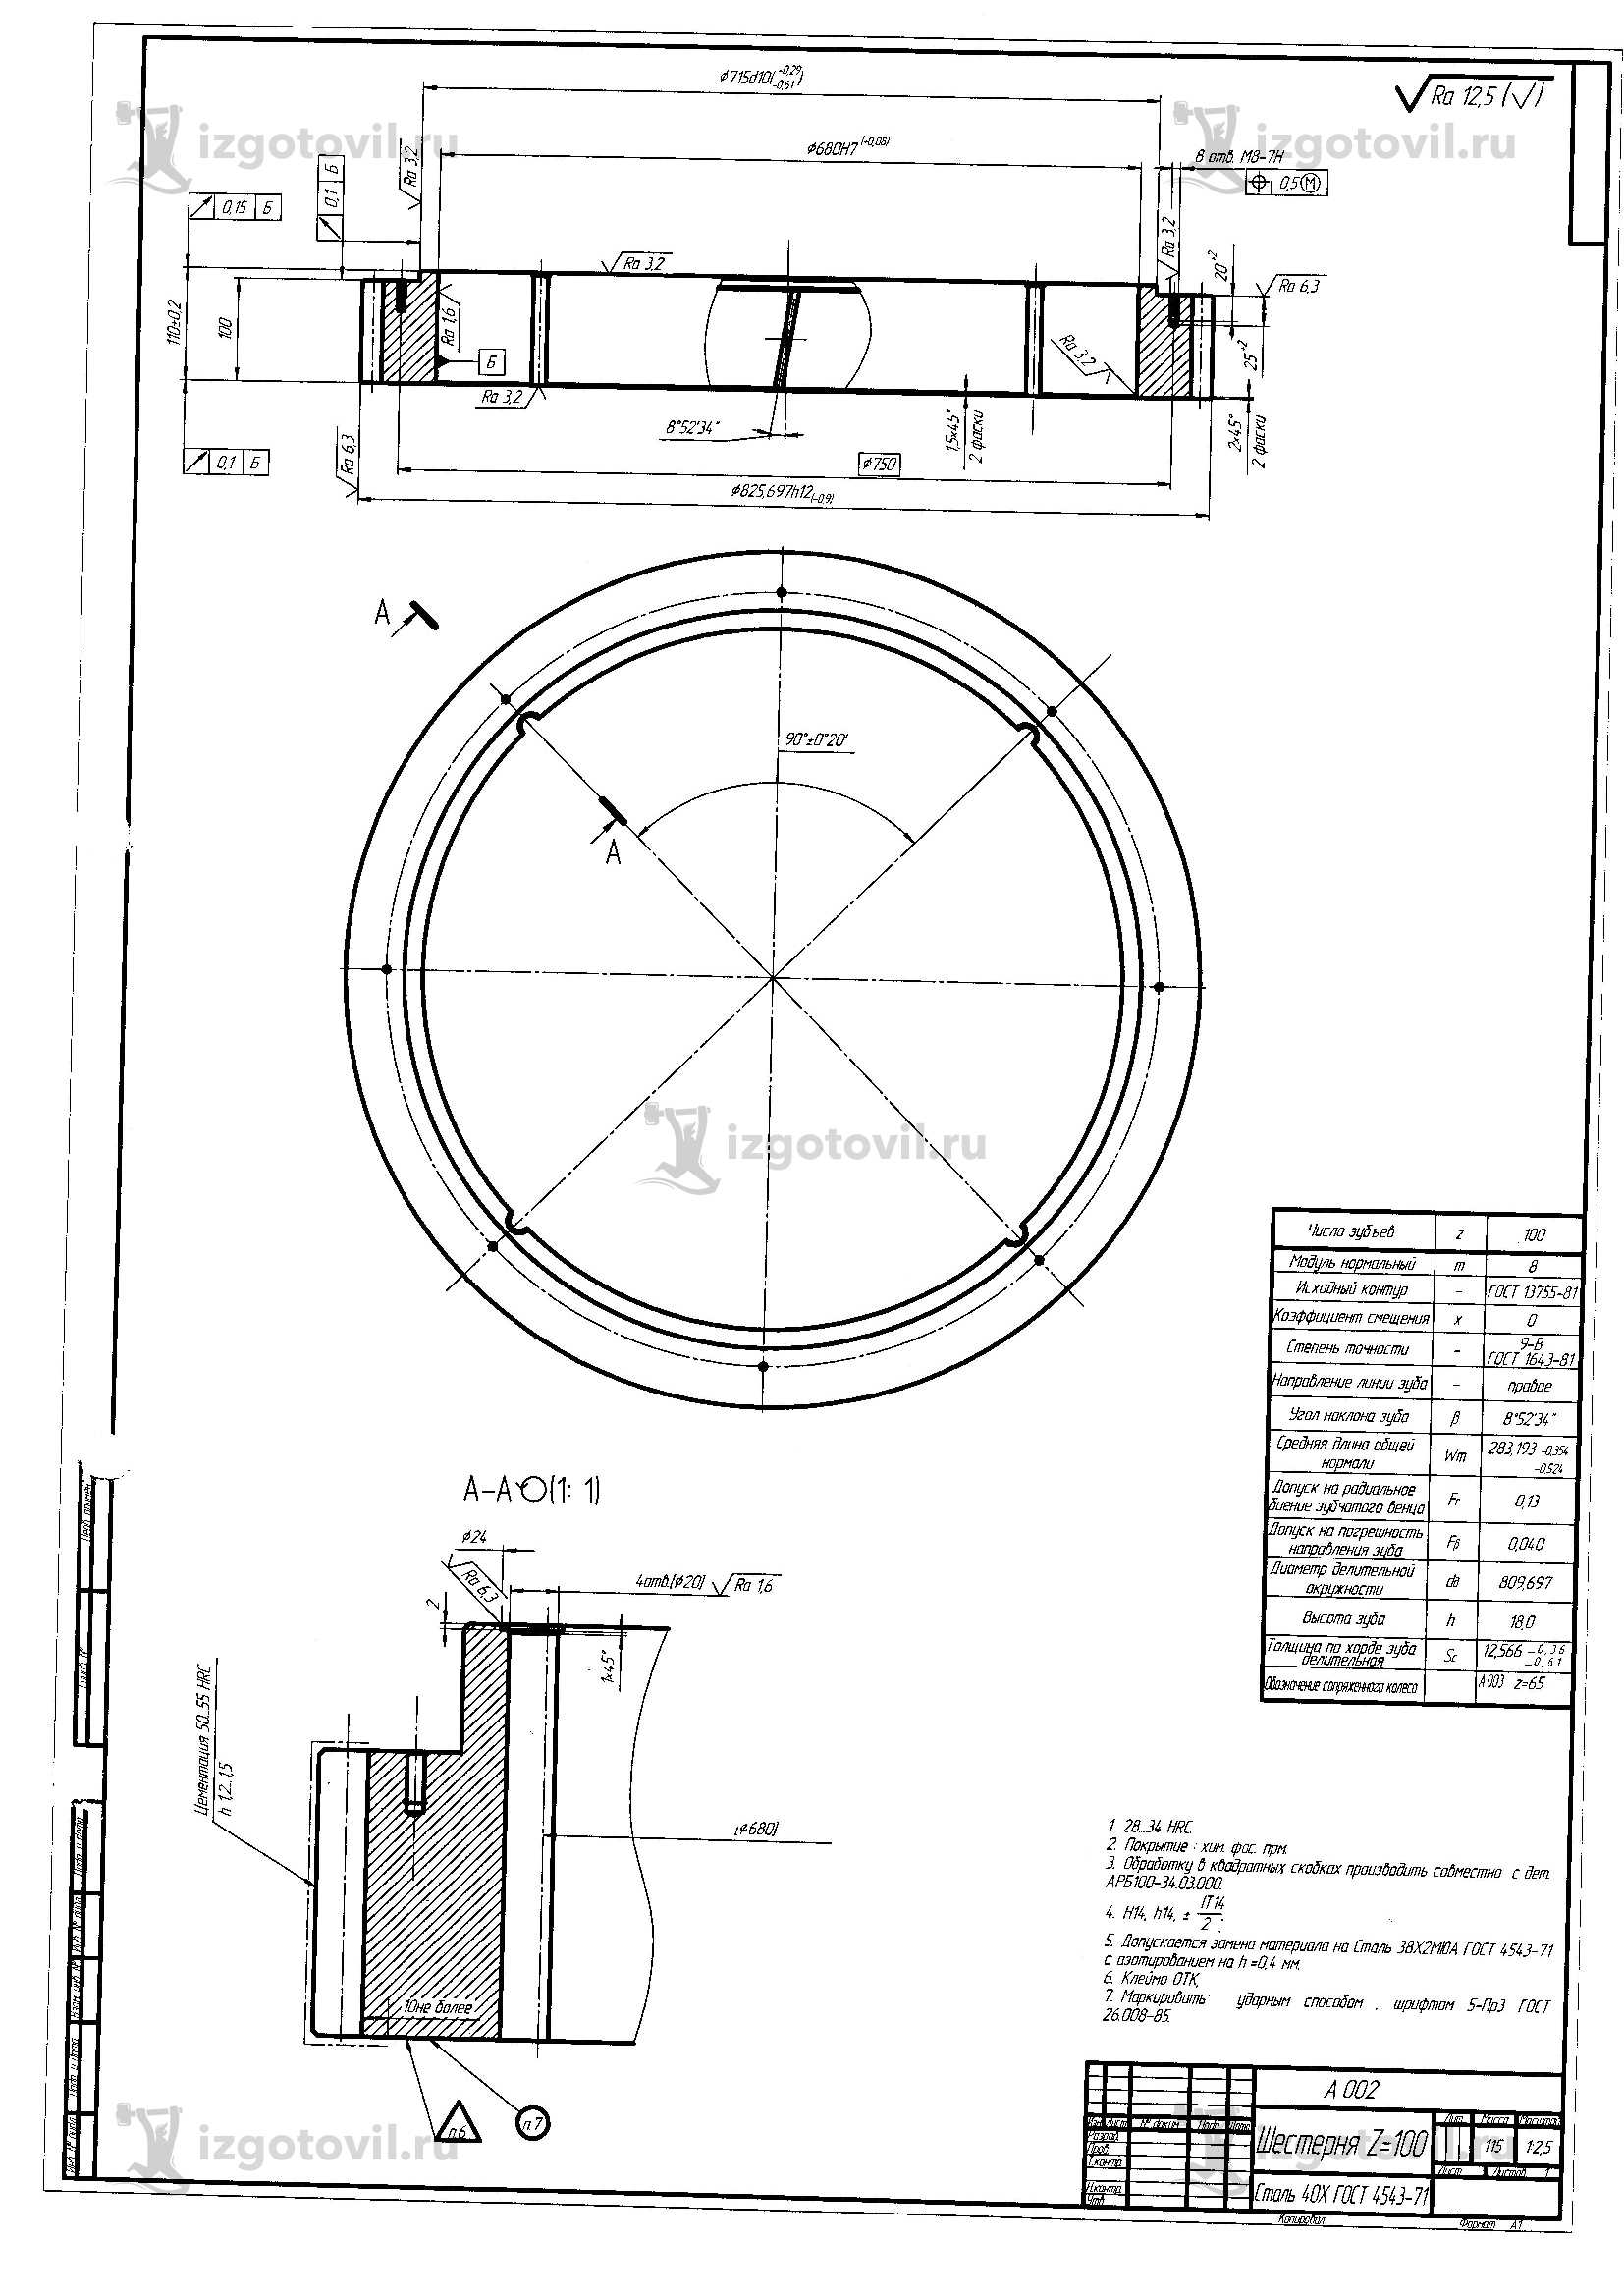 Изготовление деталей по чертежам: валы, шестерин, колесо, обод и сателлит